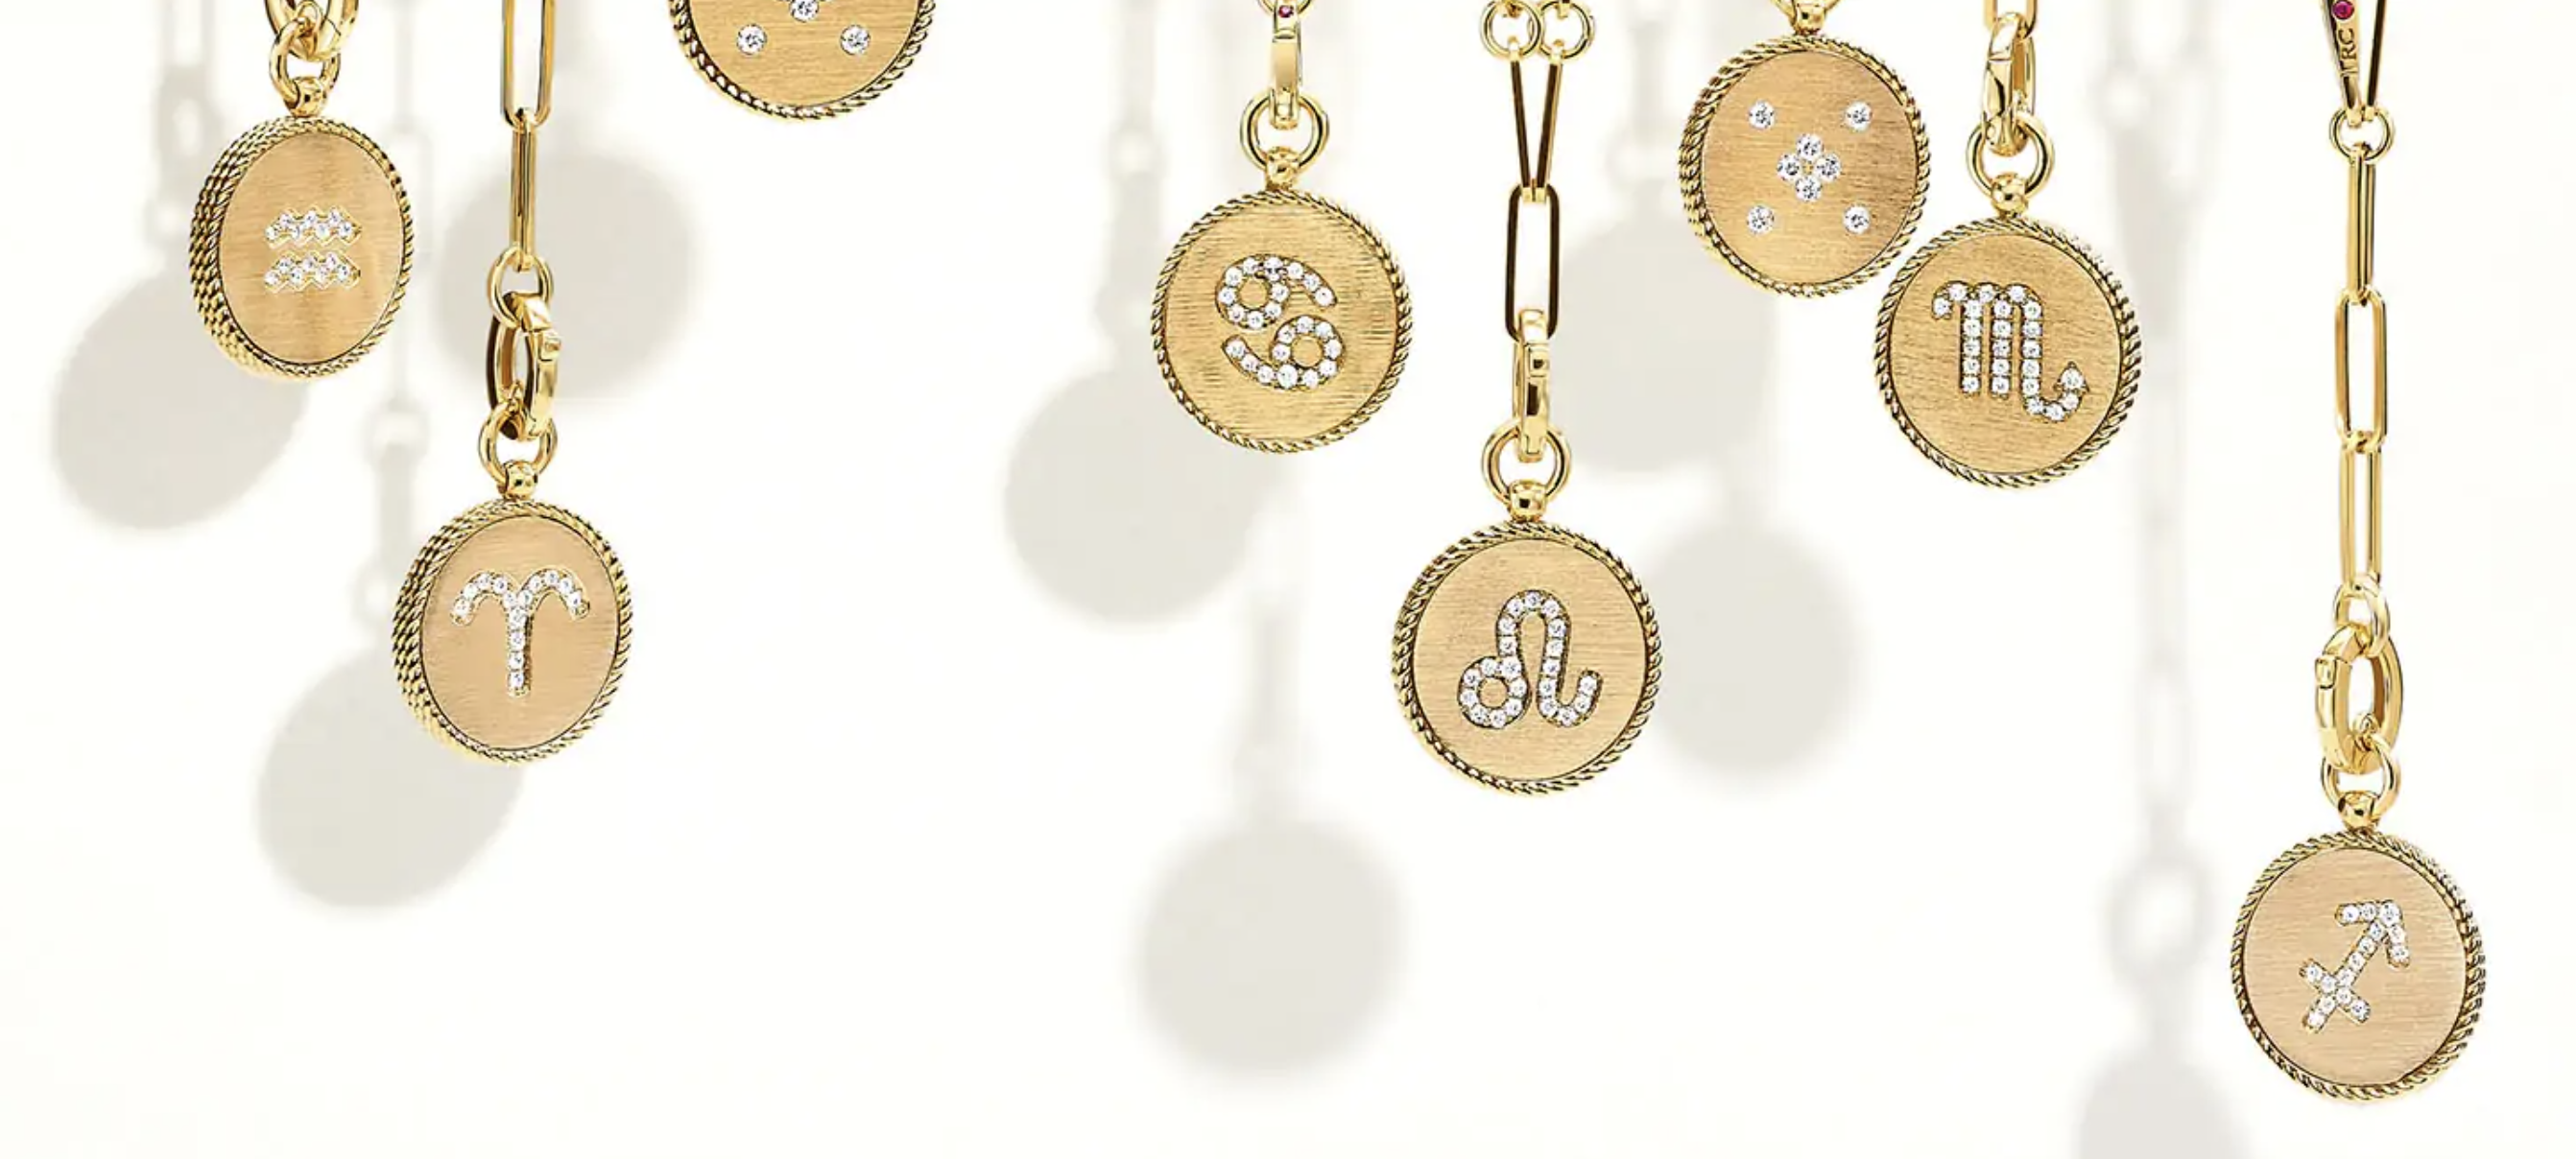 Roberto Coin Gold Diamond Pendant Necklaces